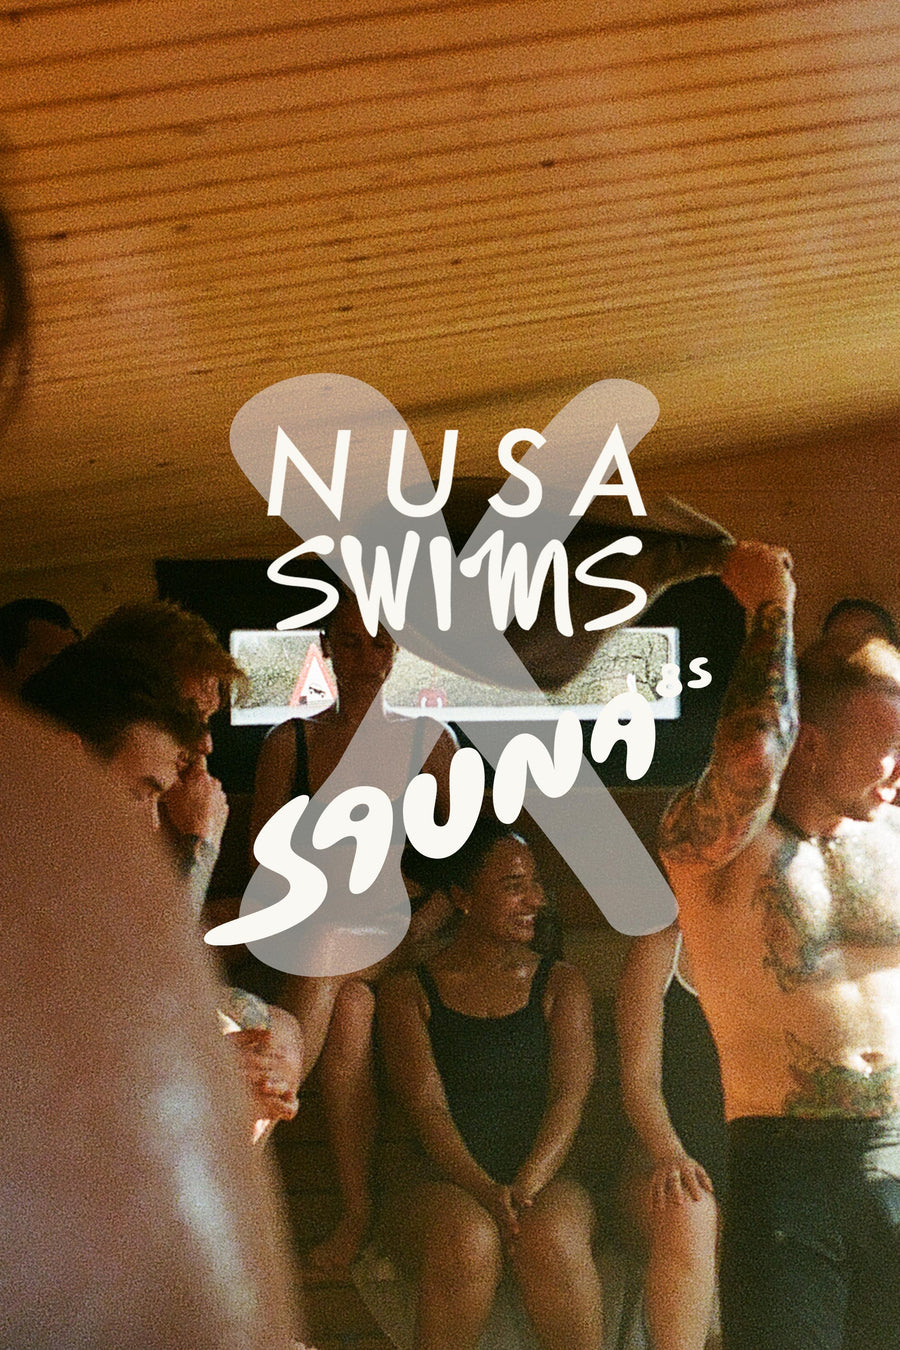 NUSA SWIMS Copenhagen x Sauna85